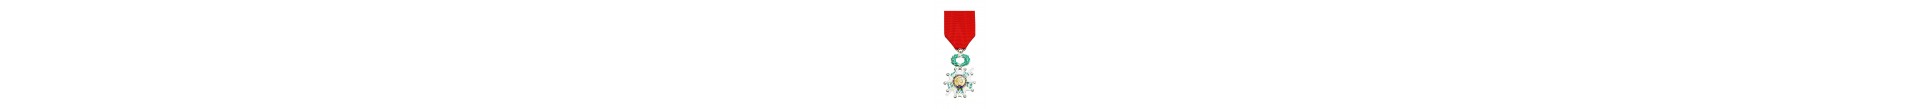 Achetez Médailles Ordre National de la Légion d'Honneur - Magnino Décorations - Vente de Médailles et Décorations